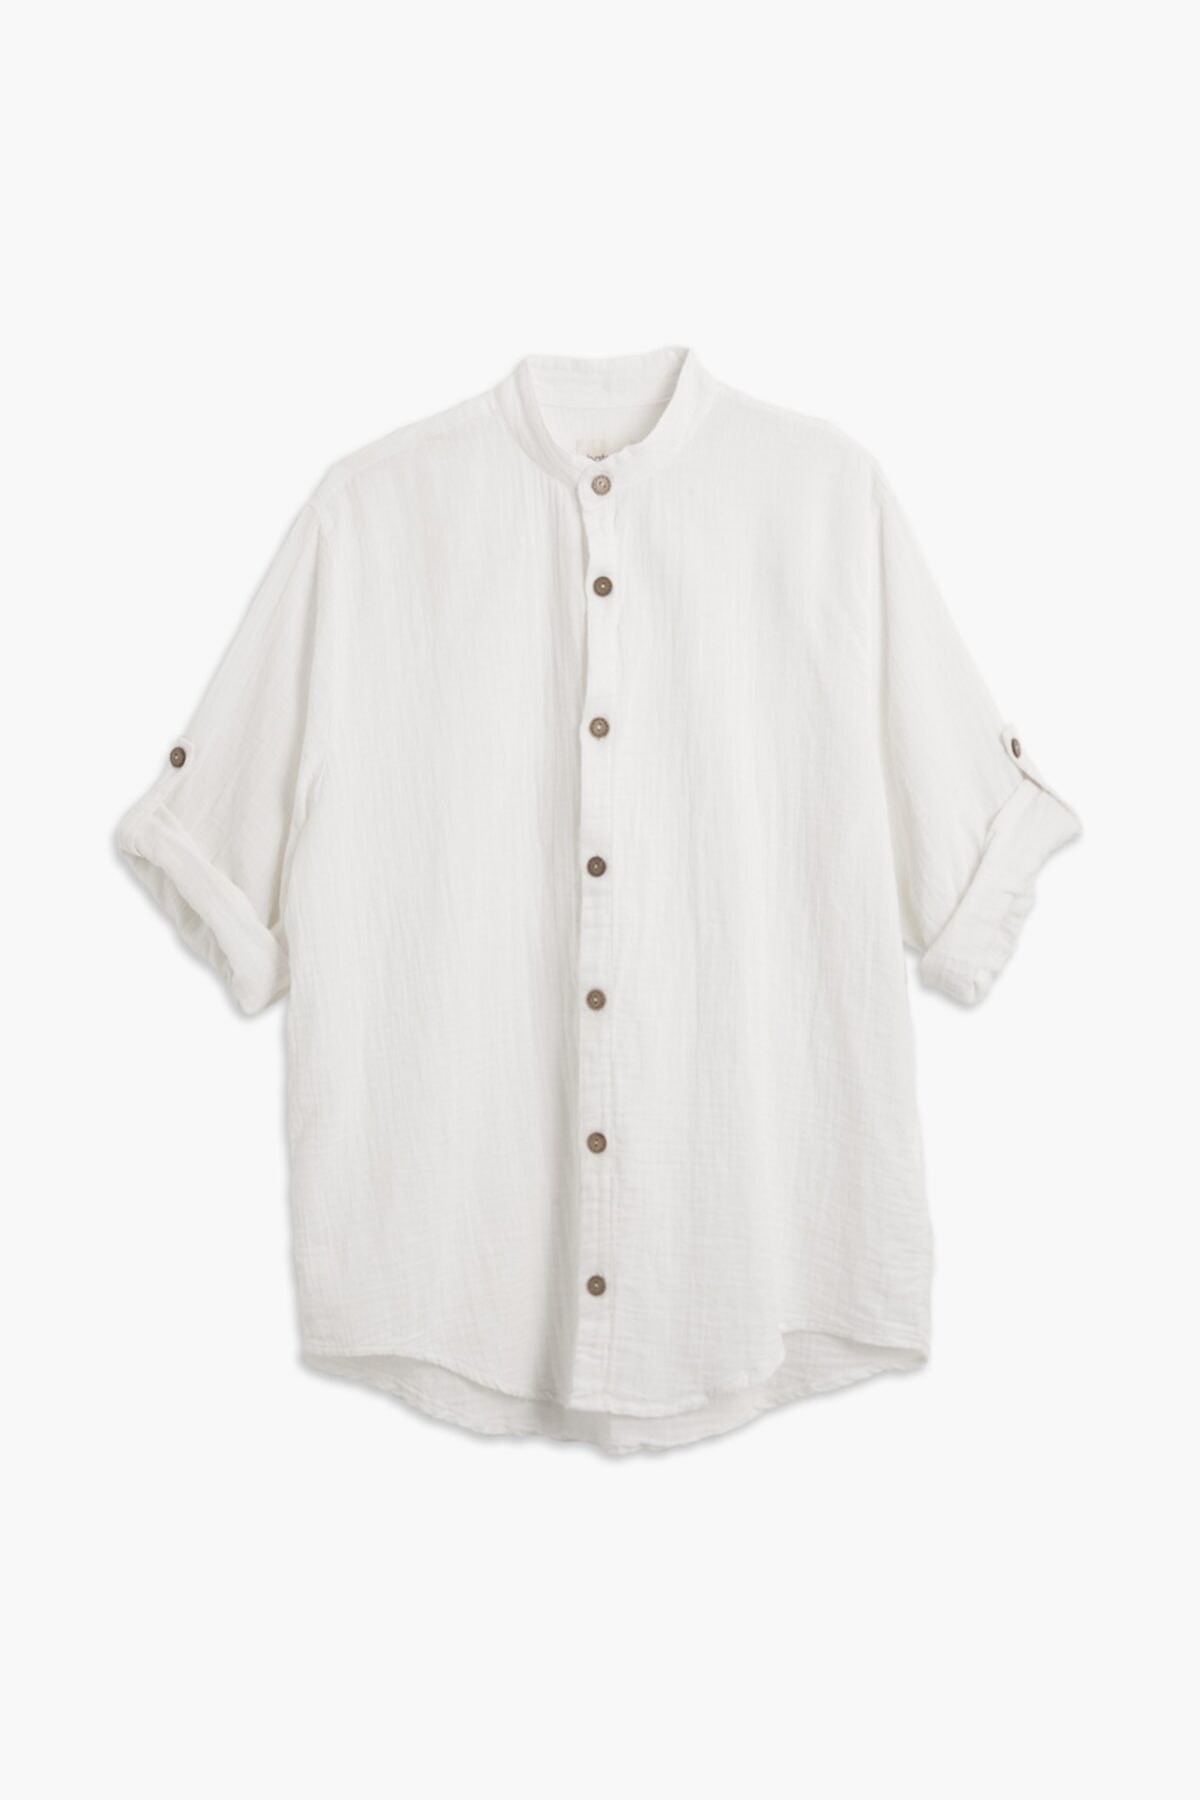 100% Cotton Muslin Shirt - Ecru